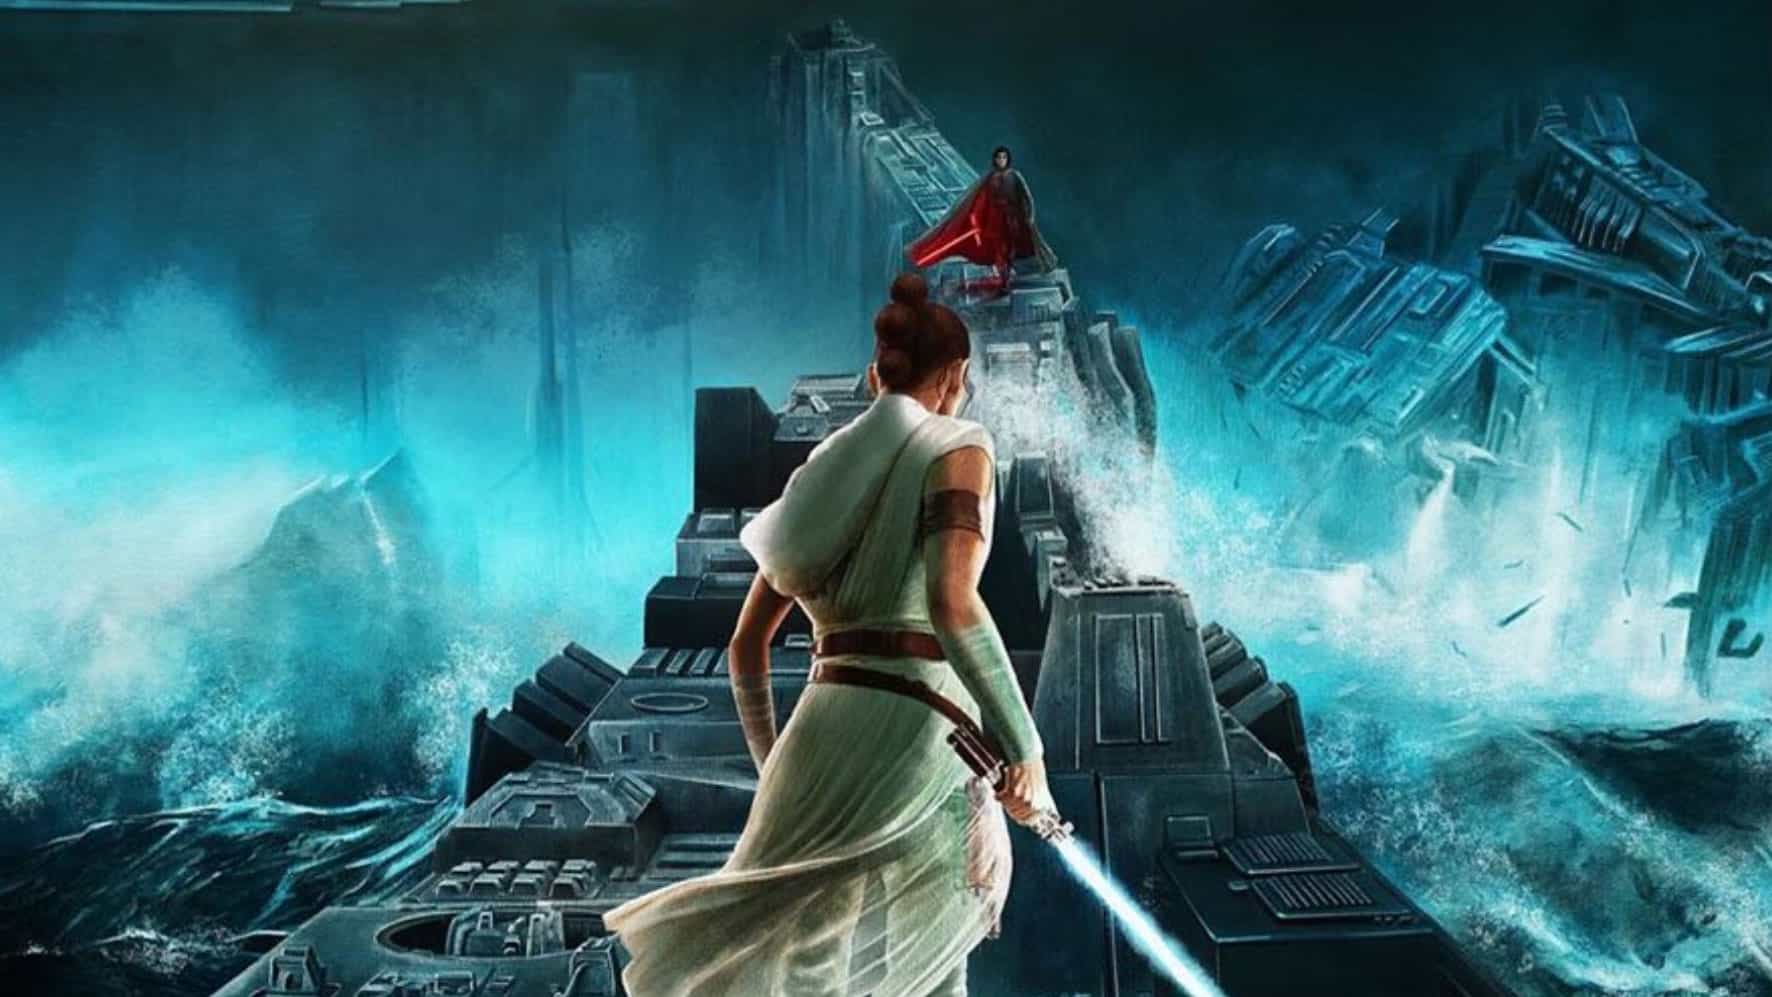 Disney salva el día con impresionantes diseñadas por artistas de Star Wars posters